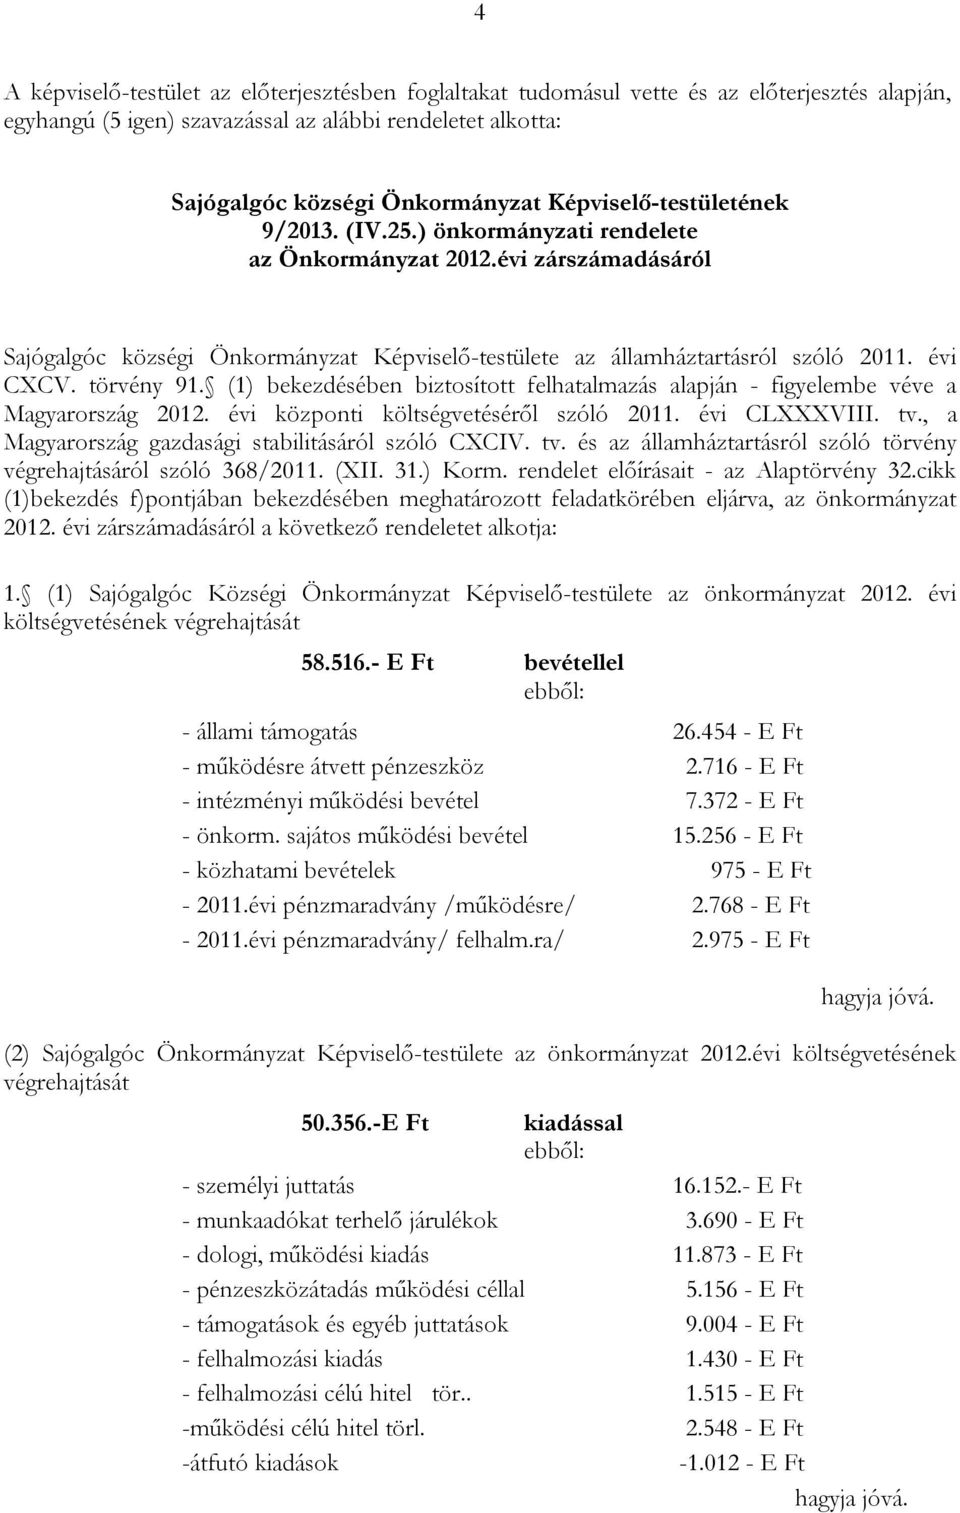 törvény 91. (1) bekezdésében biztosított felhatalmazás alapján - figyelembe véve a Magyarország 2012. évi központi költségvetéséről szóló 2011. évi CLXXXVIII. tv.